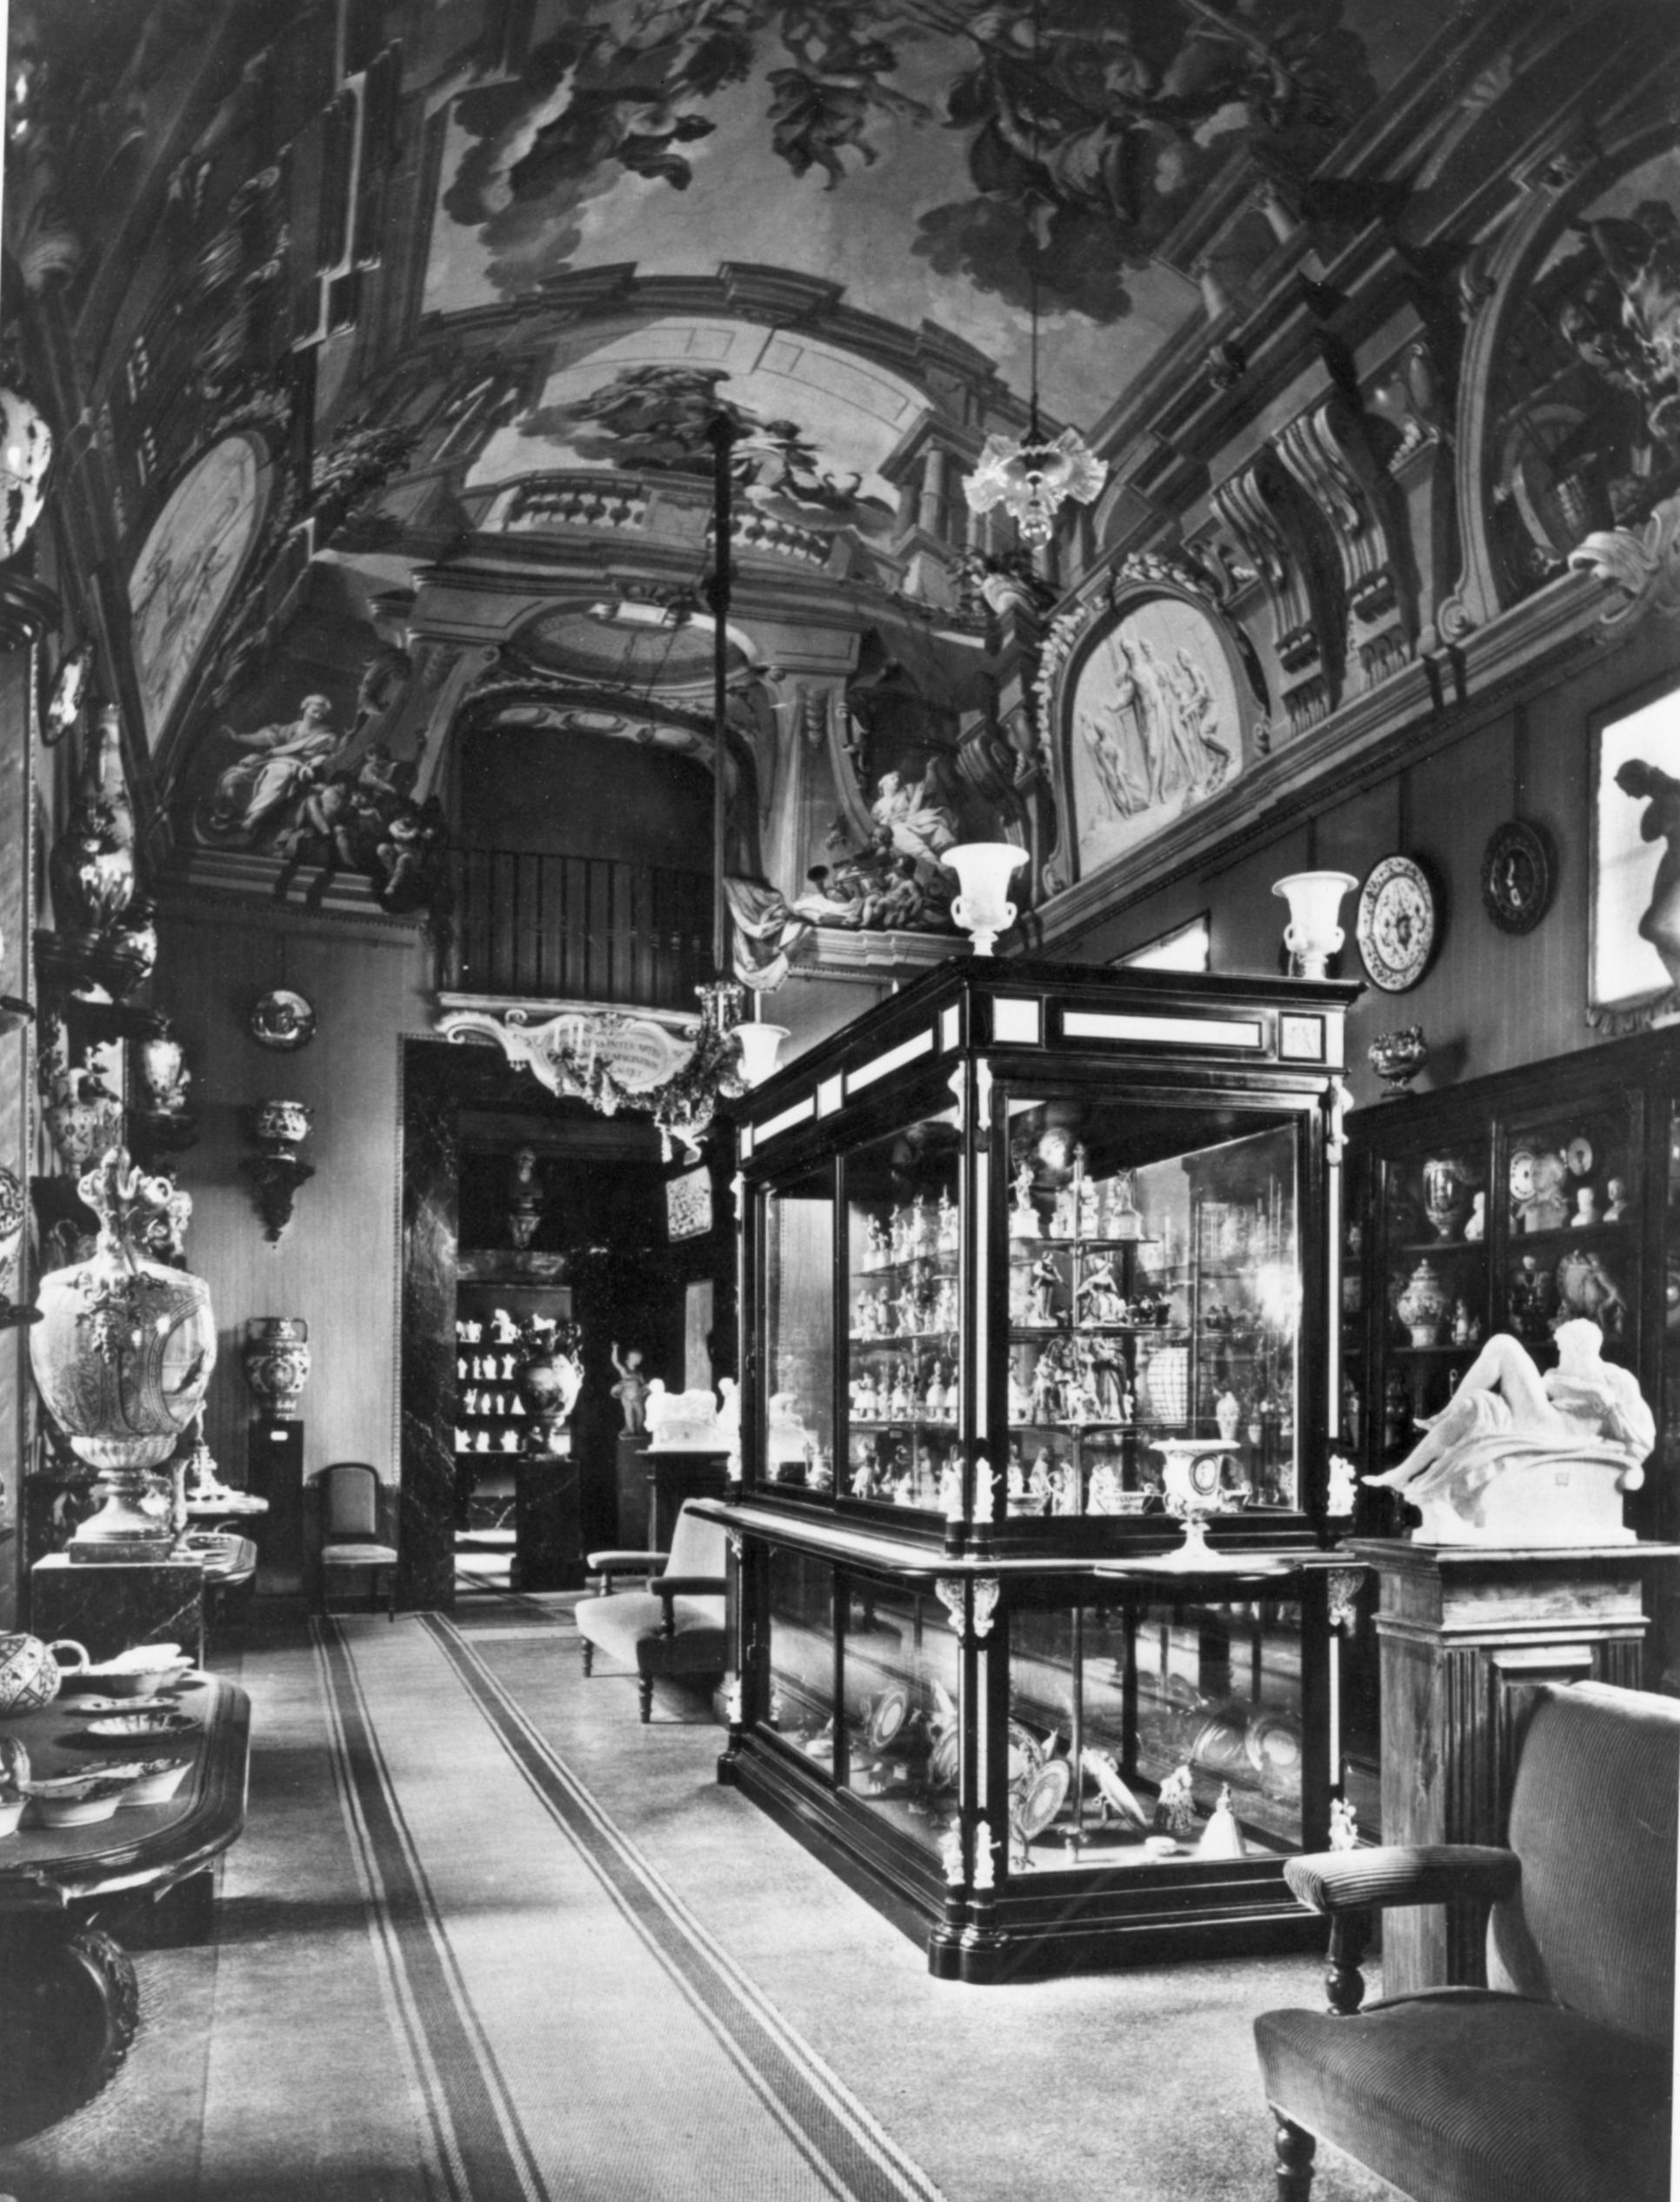 Foto in bianco e nero di una sala affrescata al cui interno sono esposti manufatti in porcellana